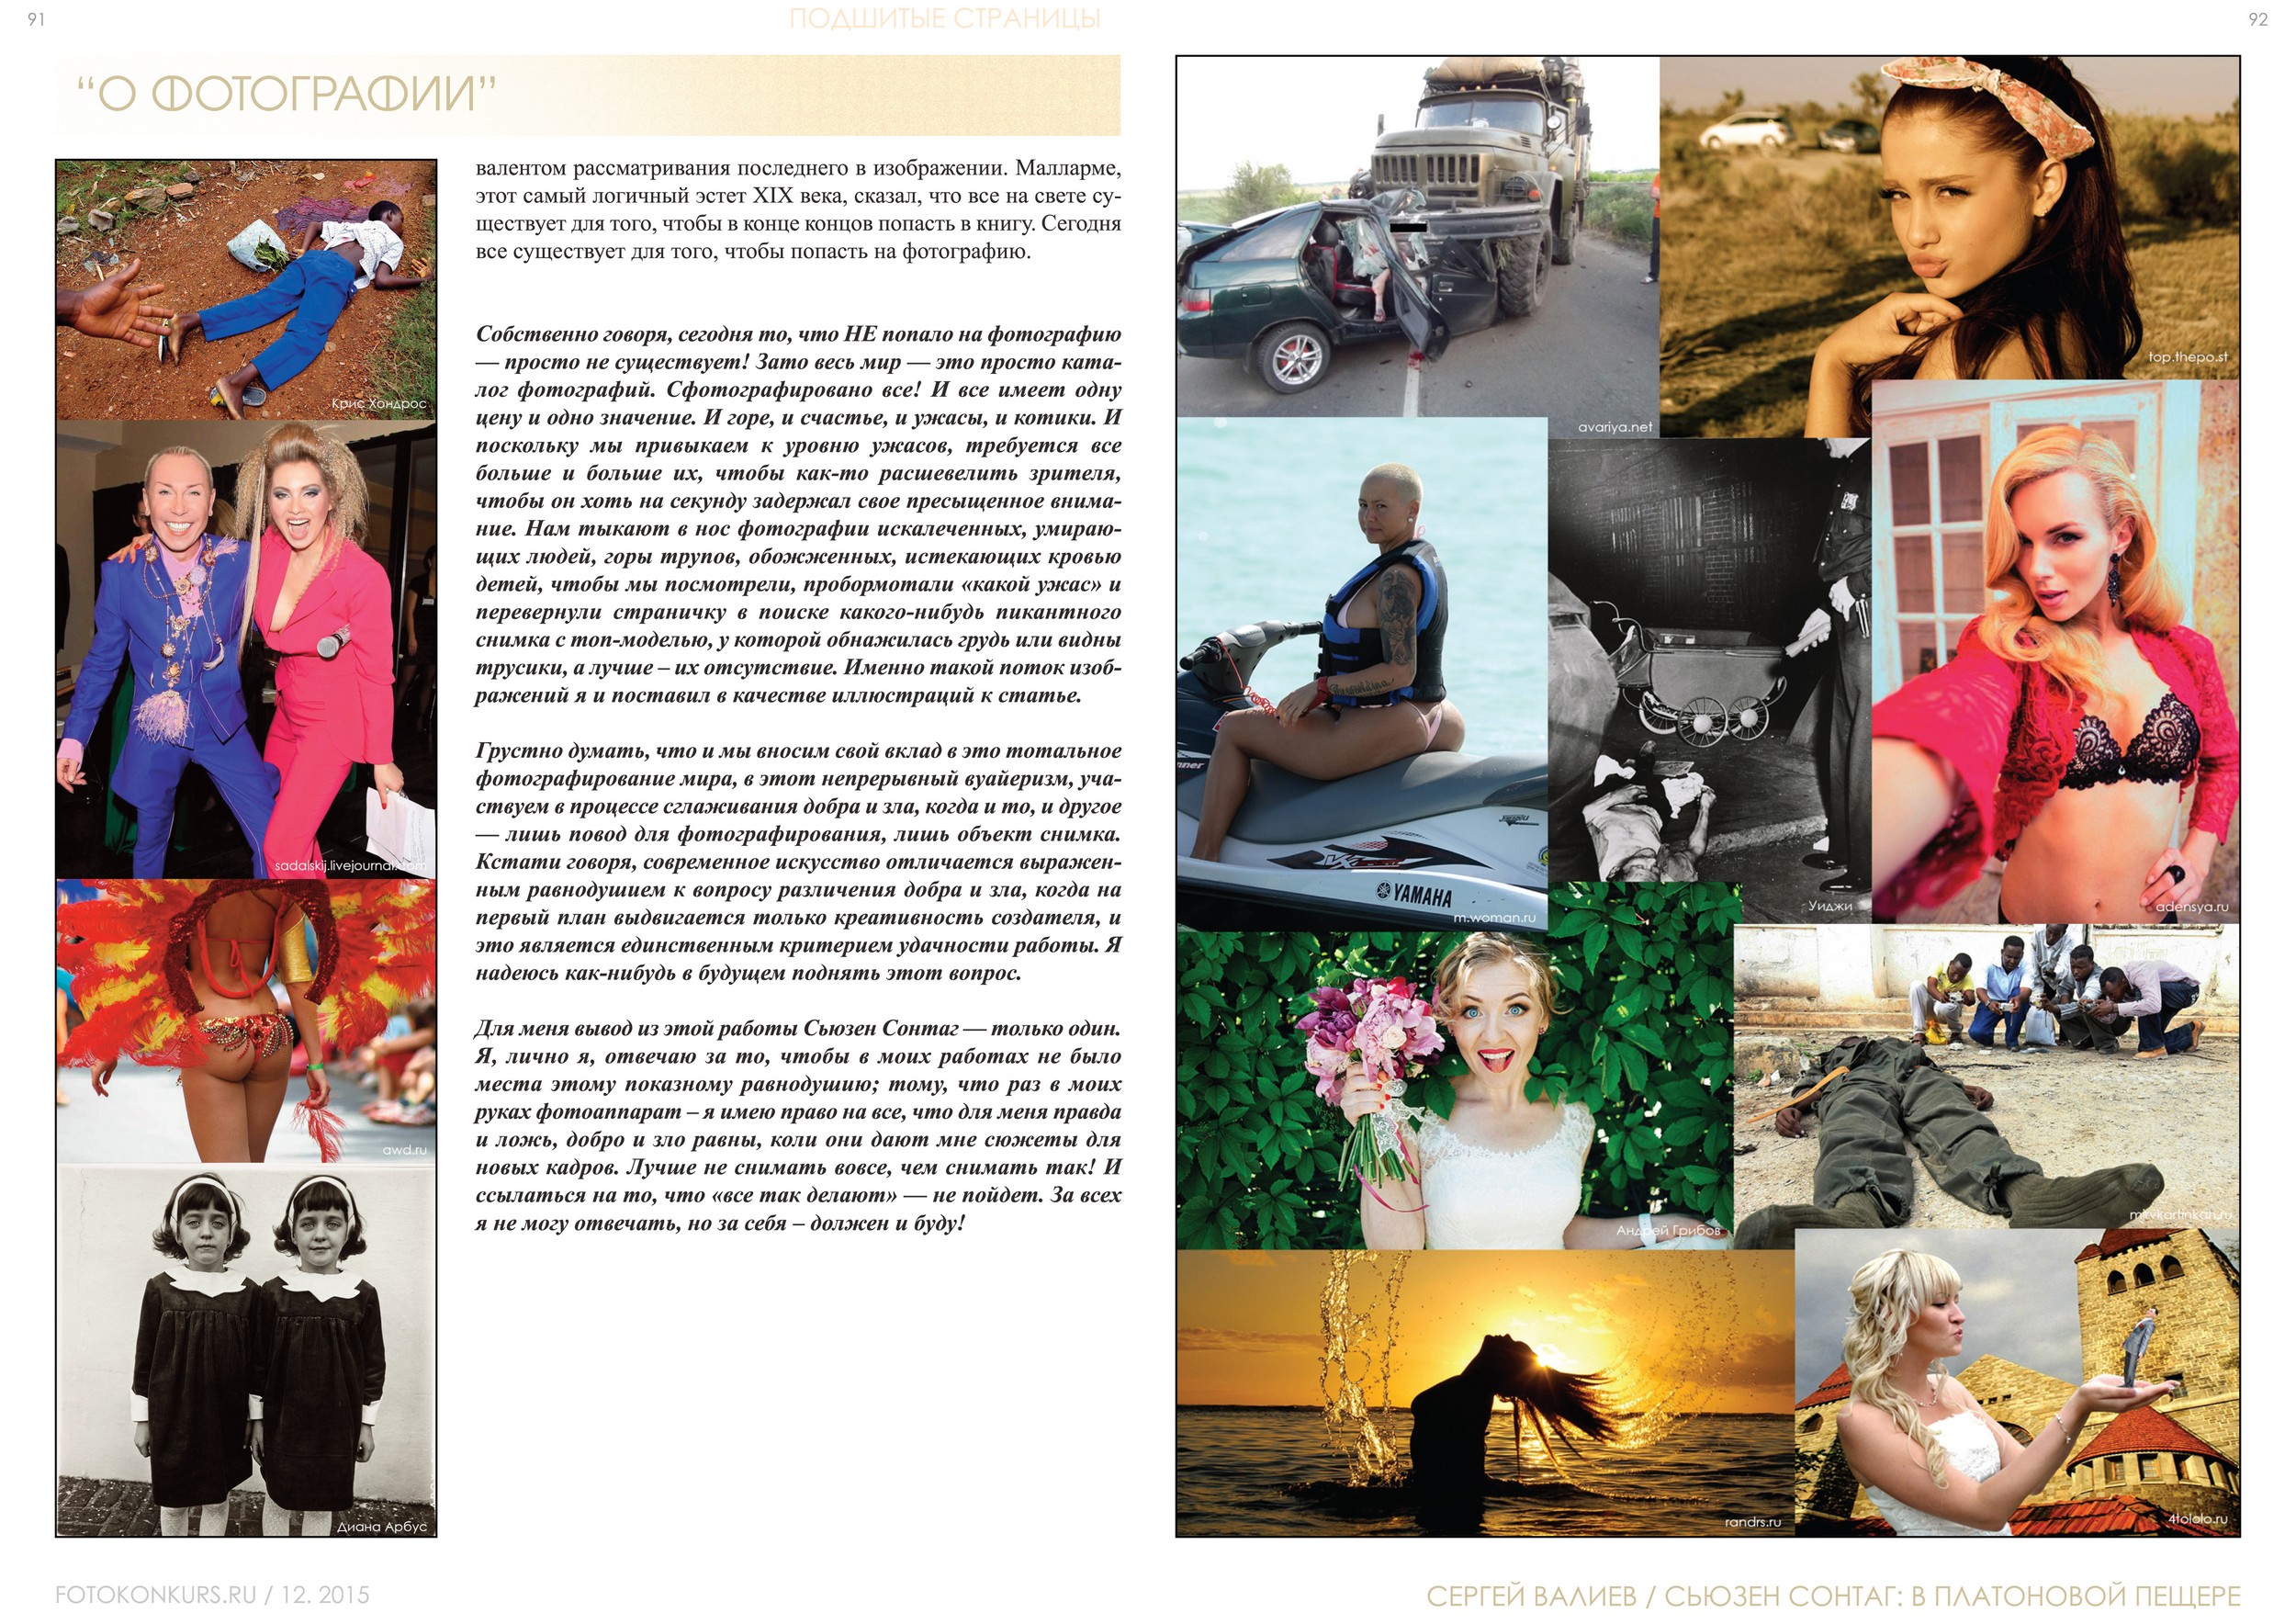 Журнал Фотоконкурс.ру, Выпуск 2, декабрь-2015, страница 91-92